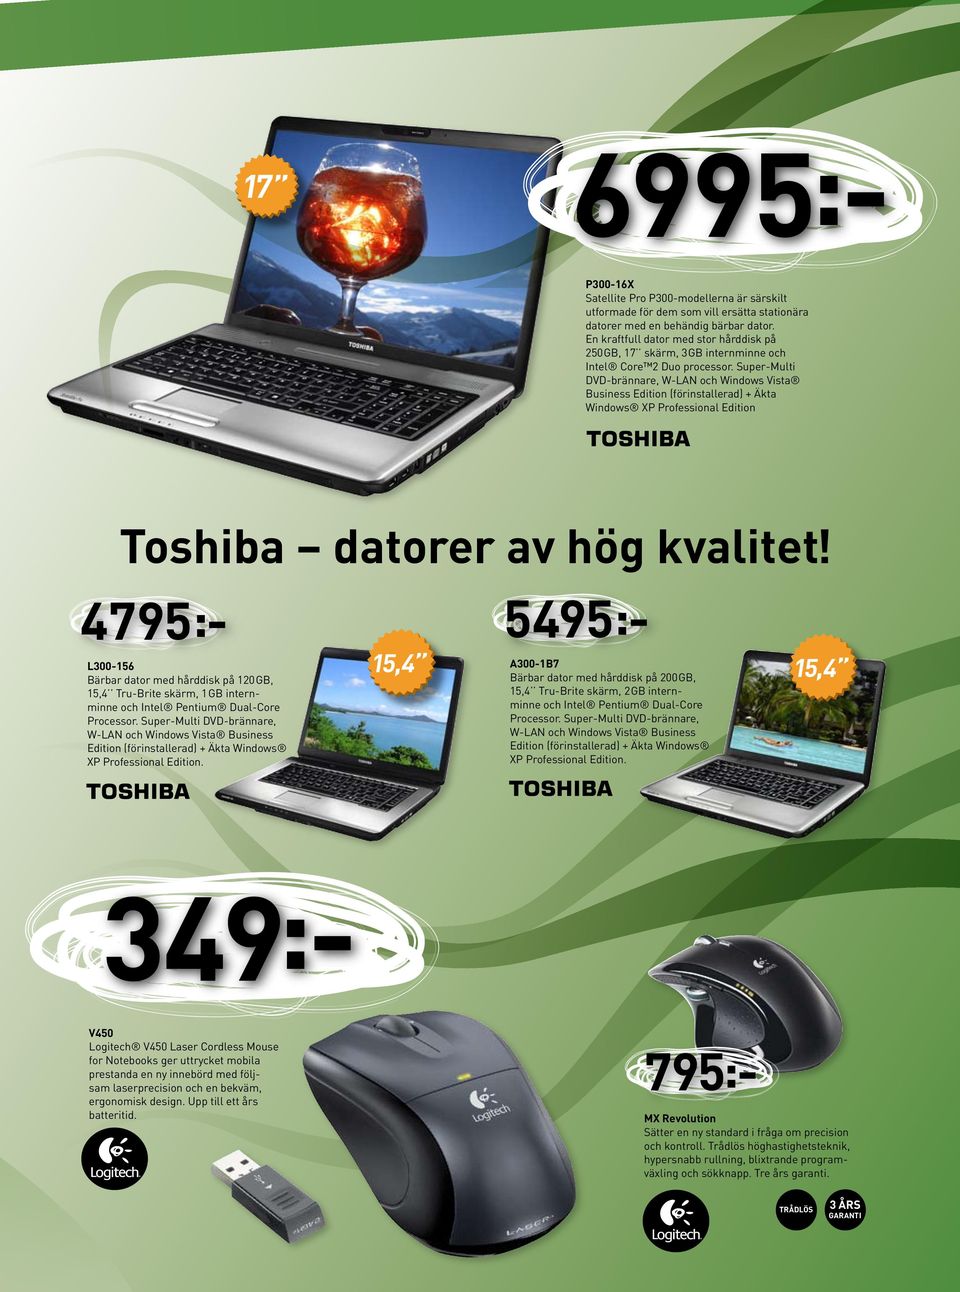 Super-Multi DVD-brännare, W-LAN och Windows Vista Business Edition (förinstallerad) + Äkta Windows XP Professional Edition Toshiba datorer av hög kvalitet!